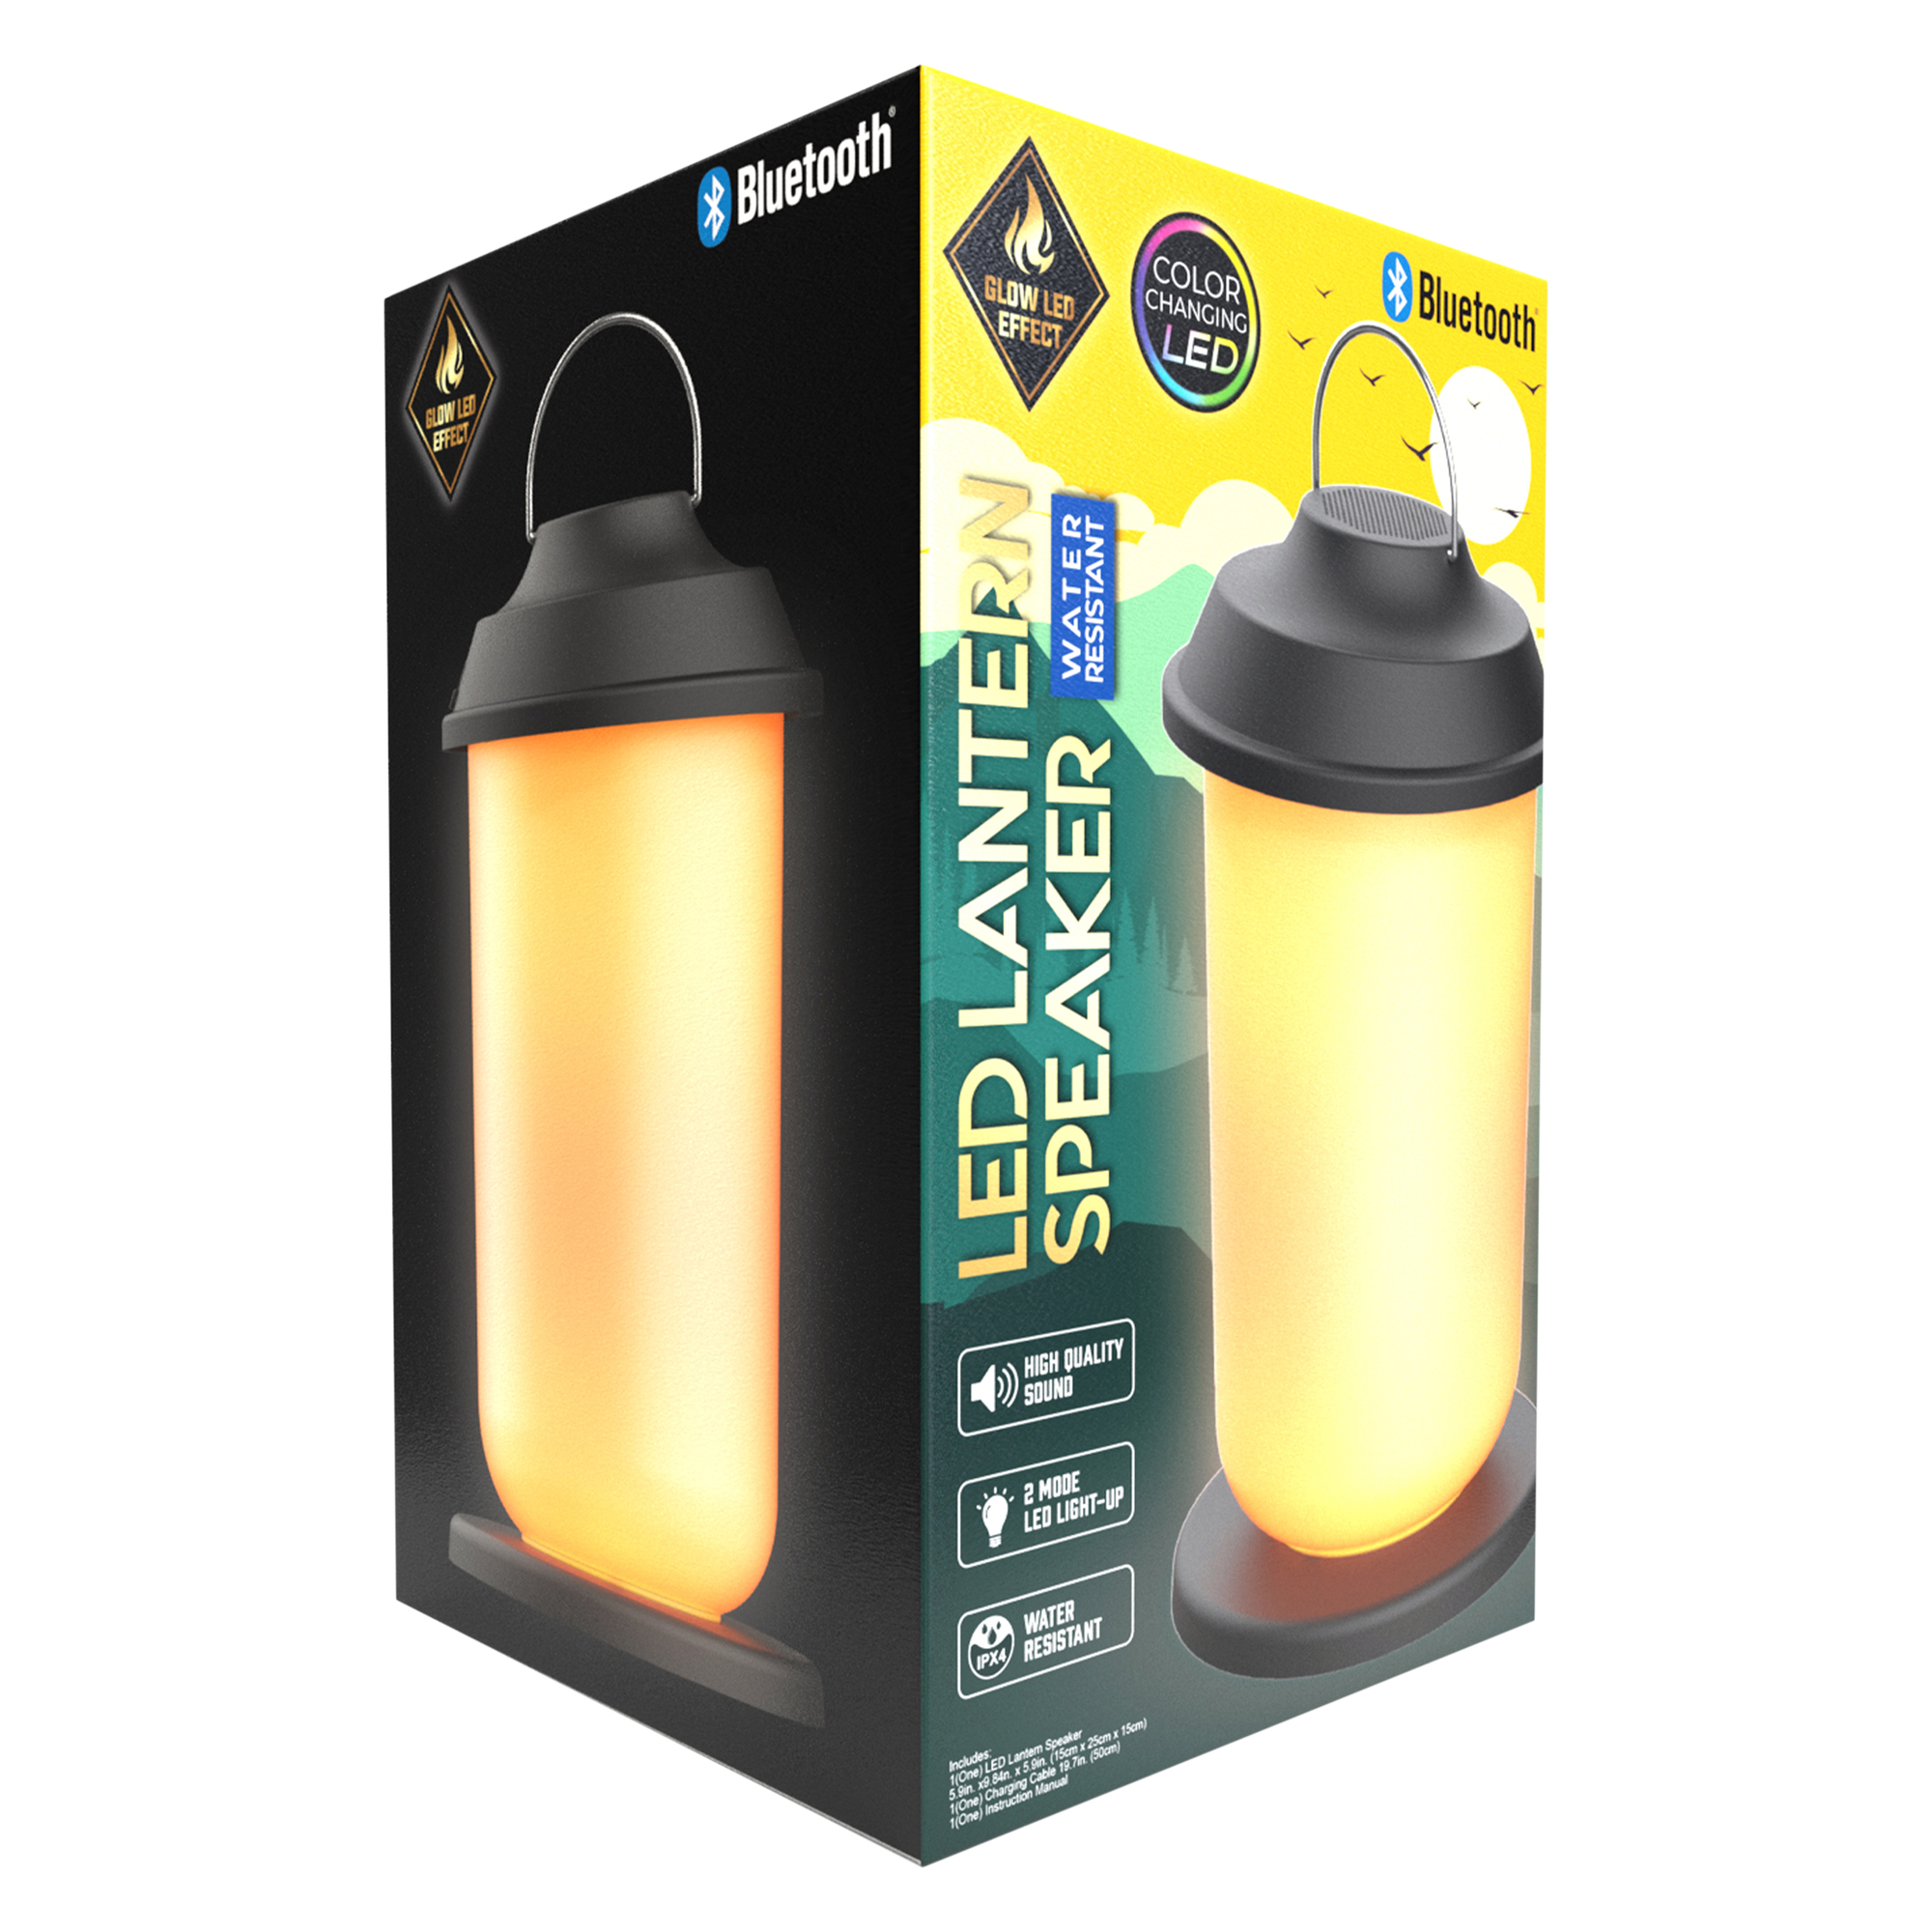 water-resistant bluetooth® LED lantern speaker | Five Below